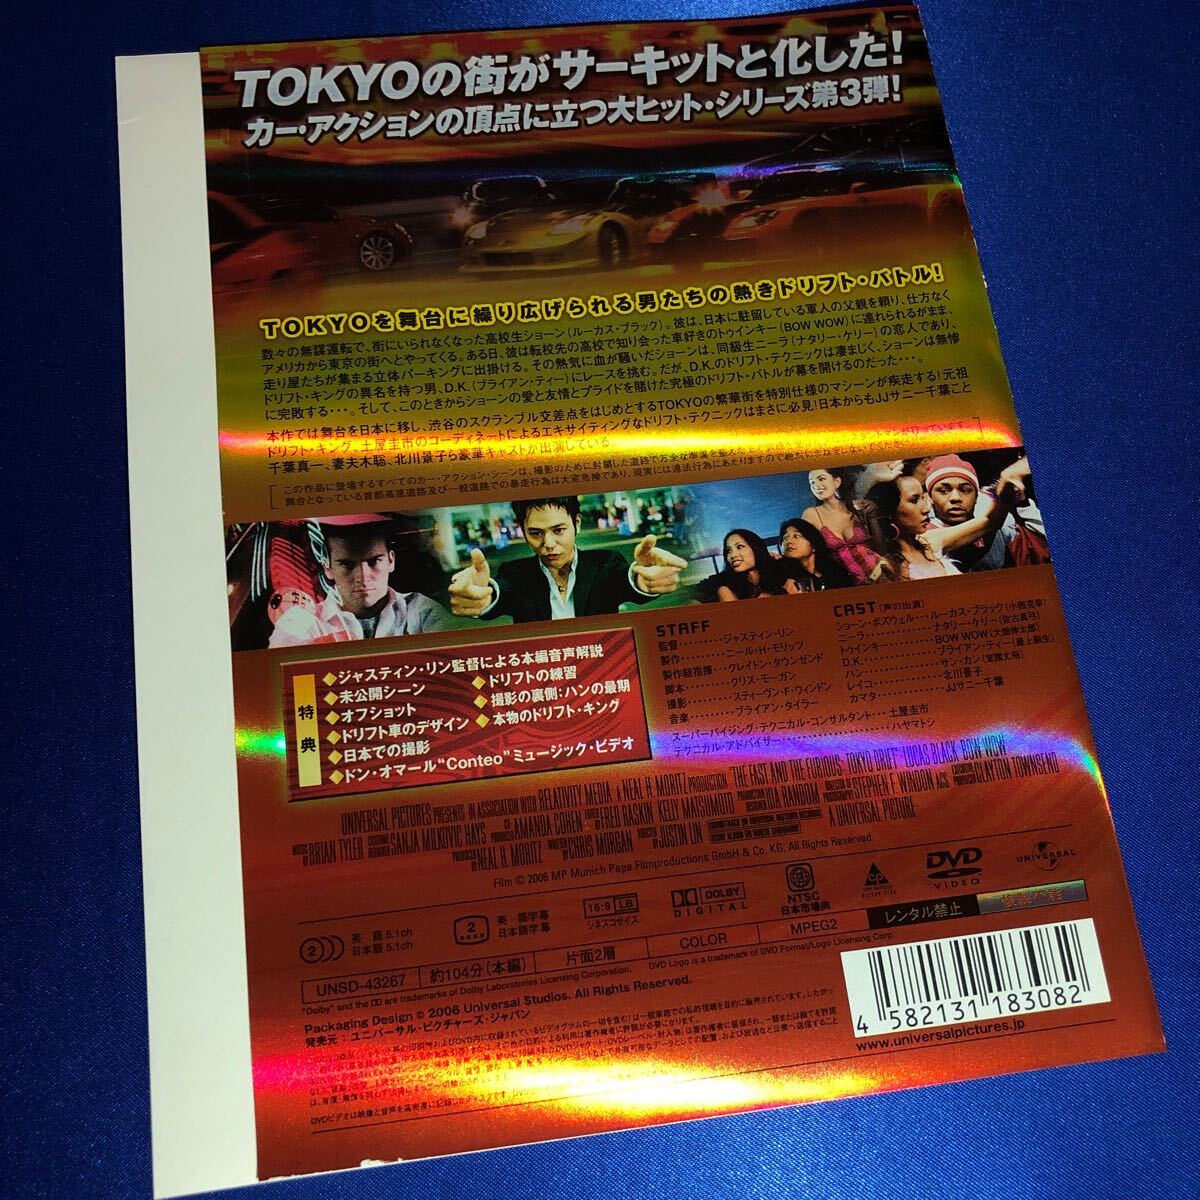 【即決価格・セル版・ディスクのクリーニング済み】ワイルド・スピードx3 TOKYO DRIFT DVD 《棚番1187》_画像2